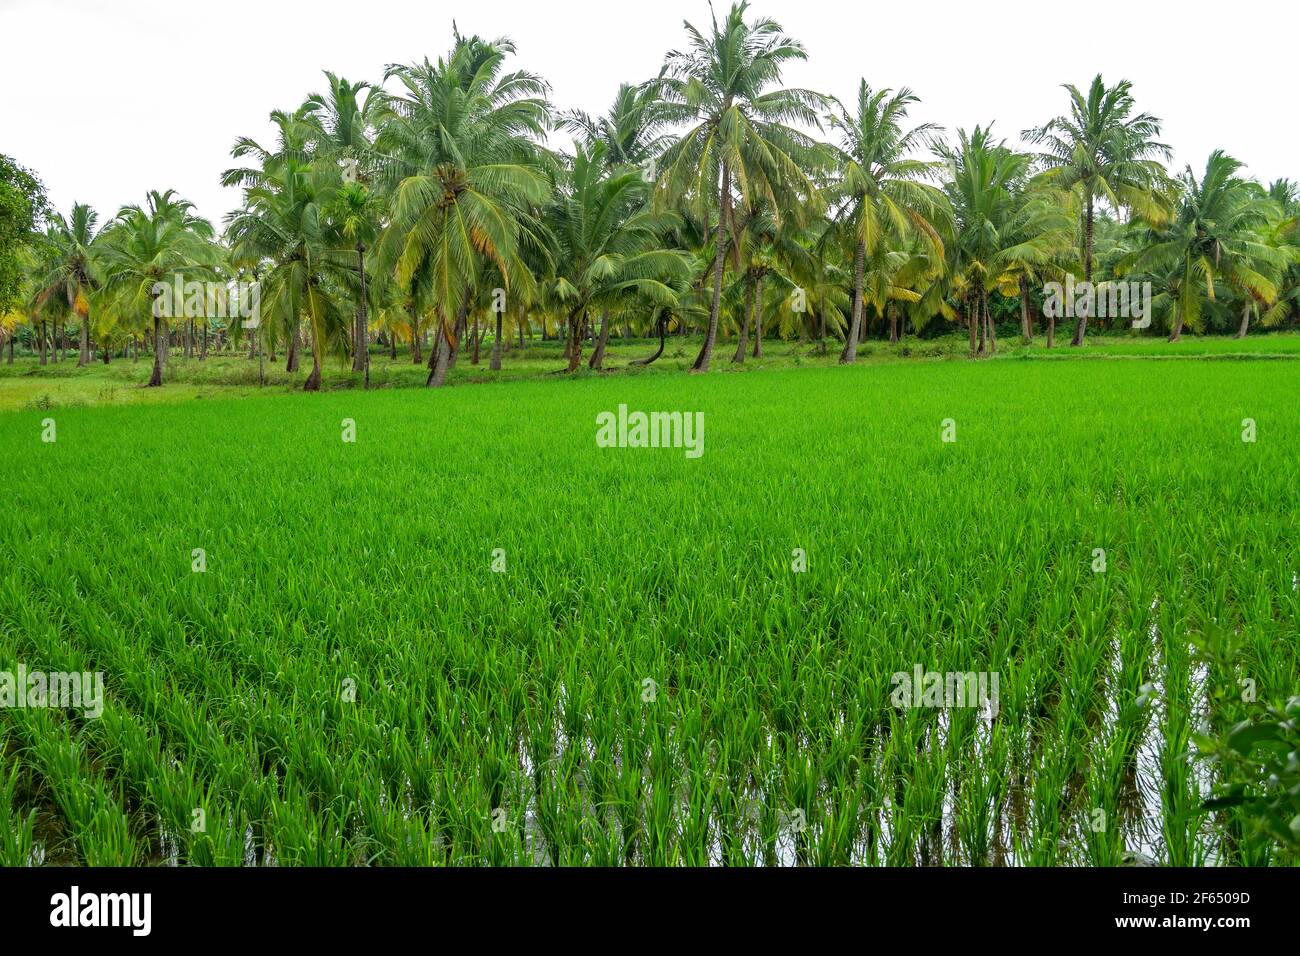 Junge Reispflanzen in Reisfeldern mit Palmen Stockfoto